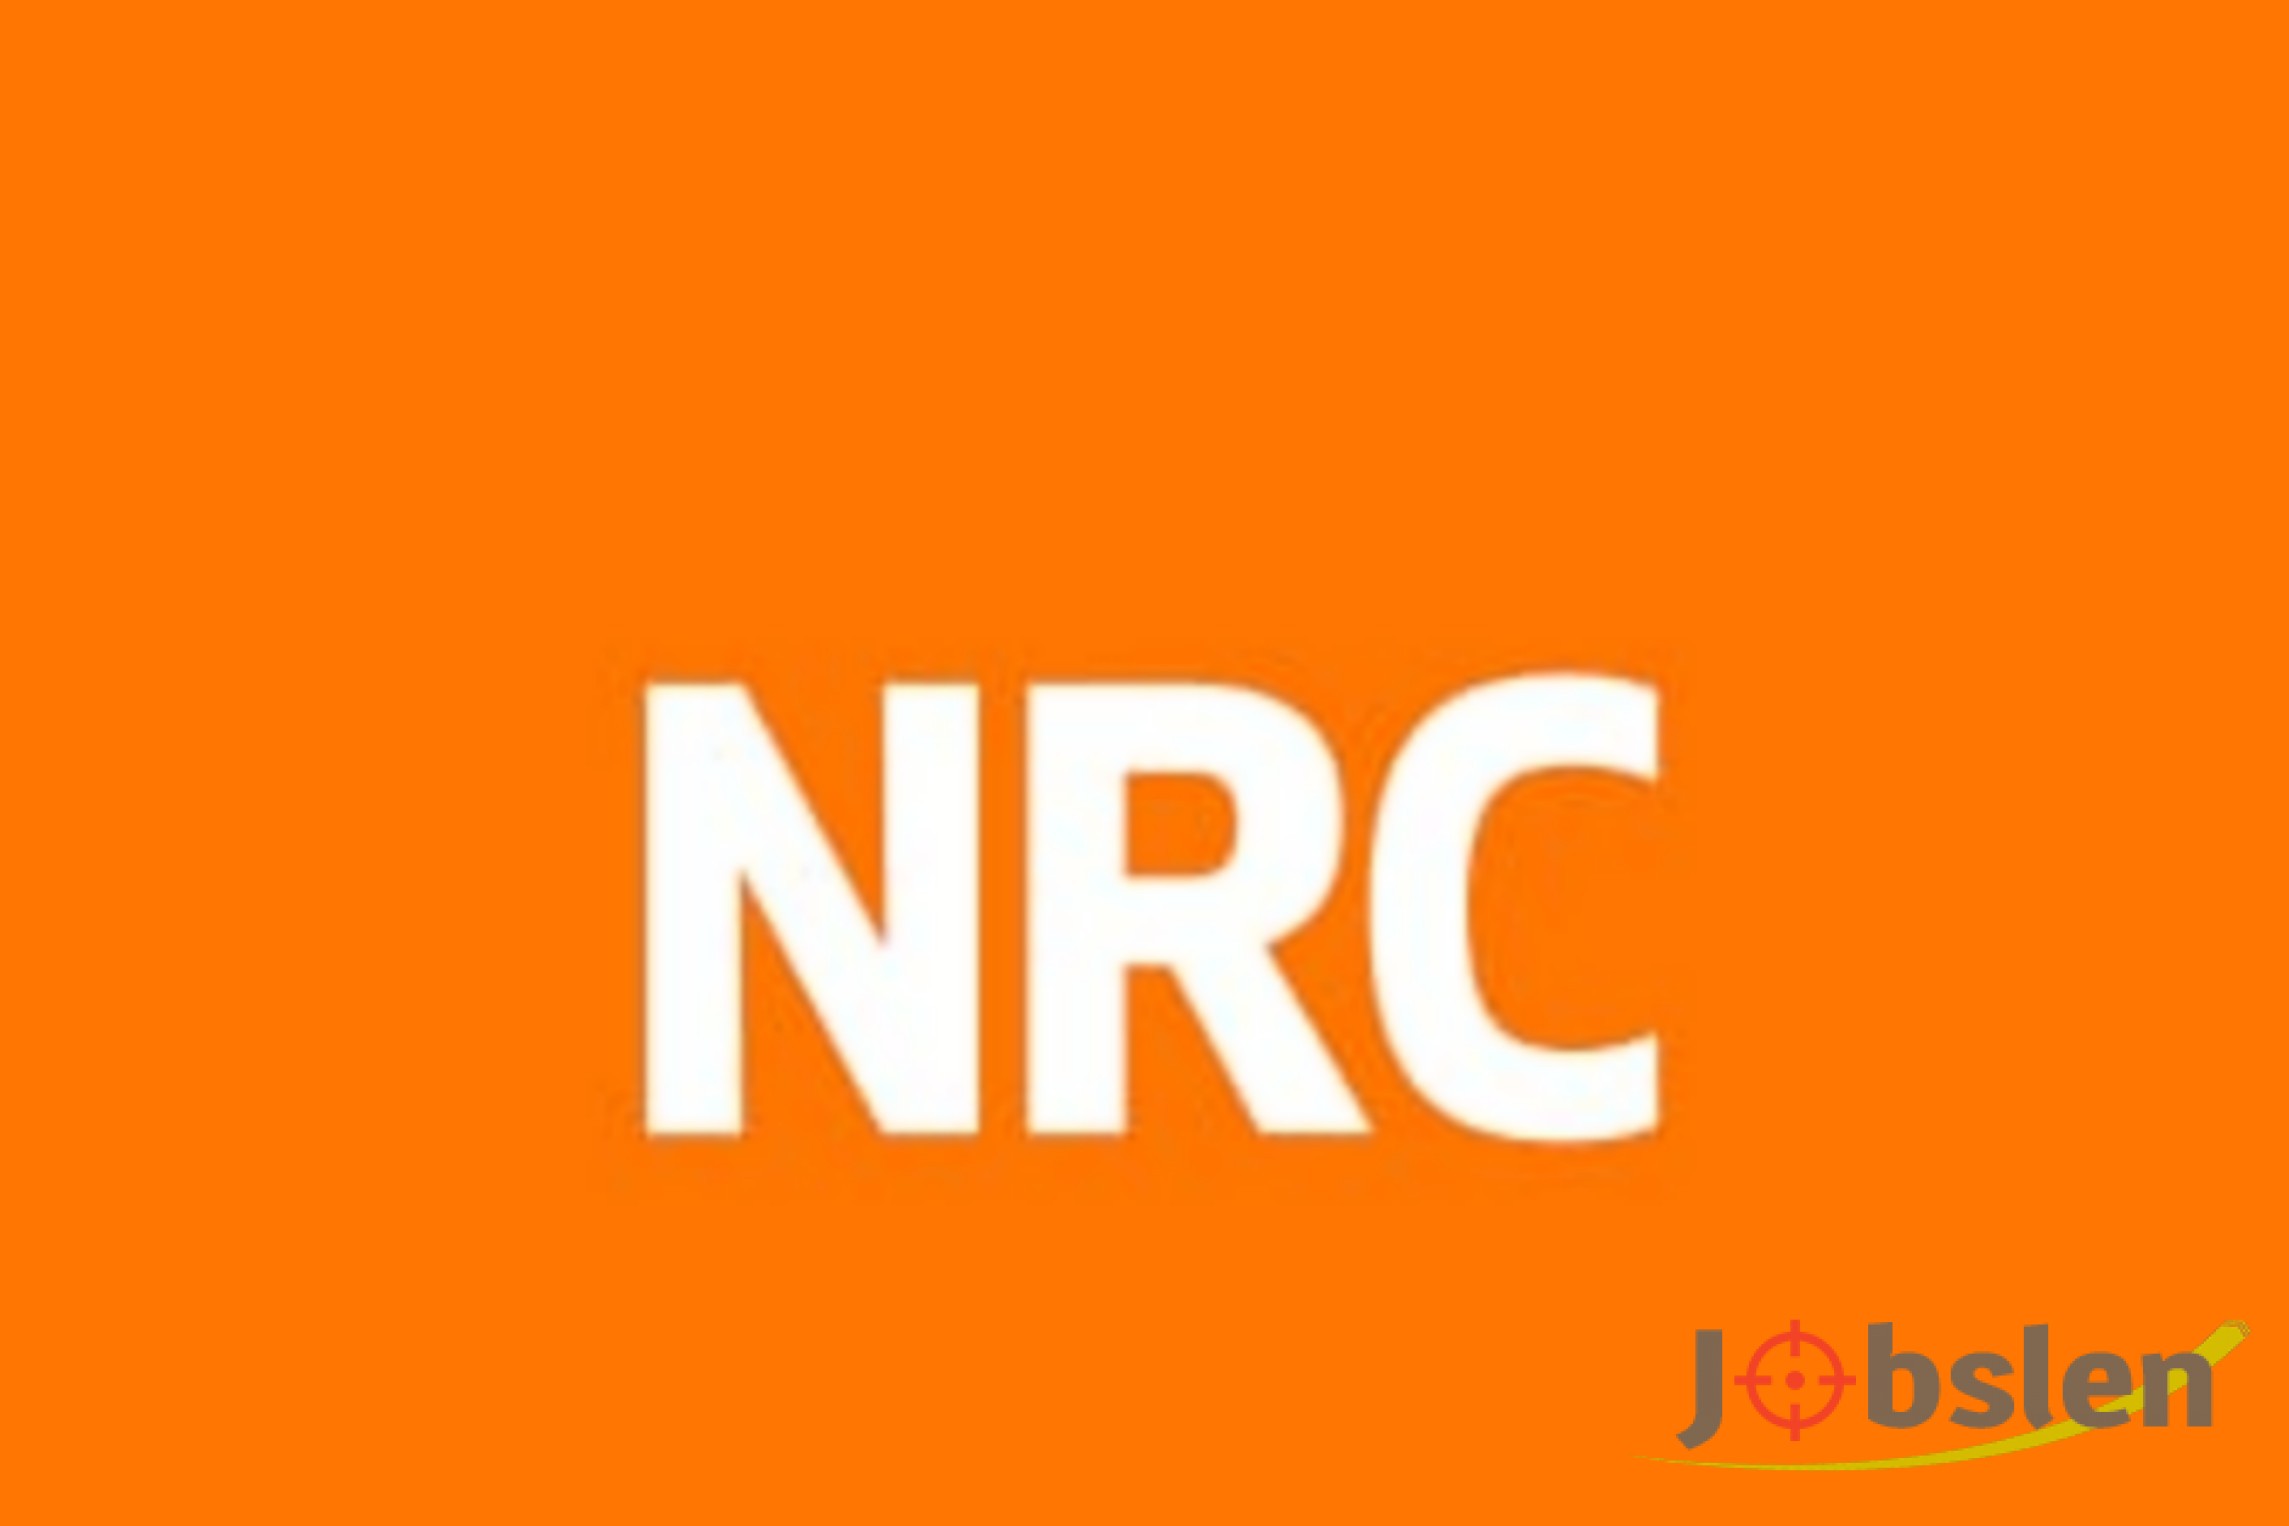 تعلن منظمة NRC عن وظائف شاغرة